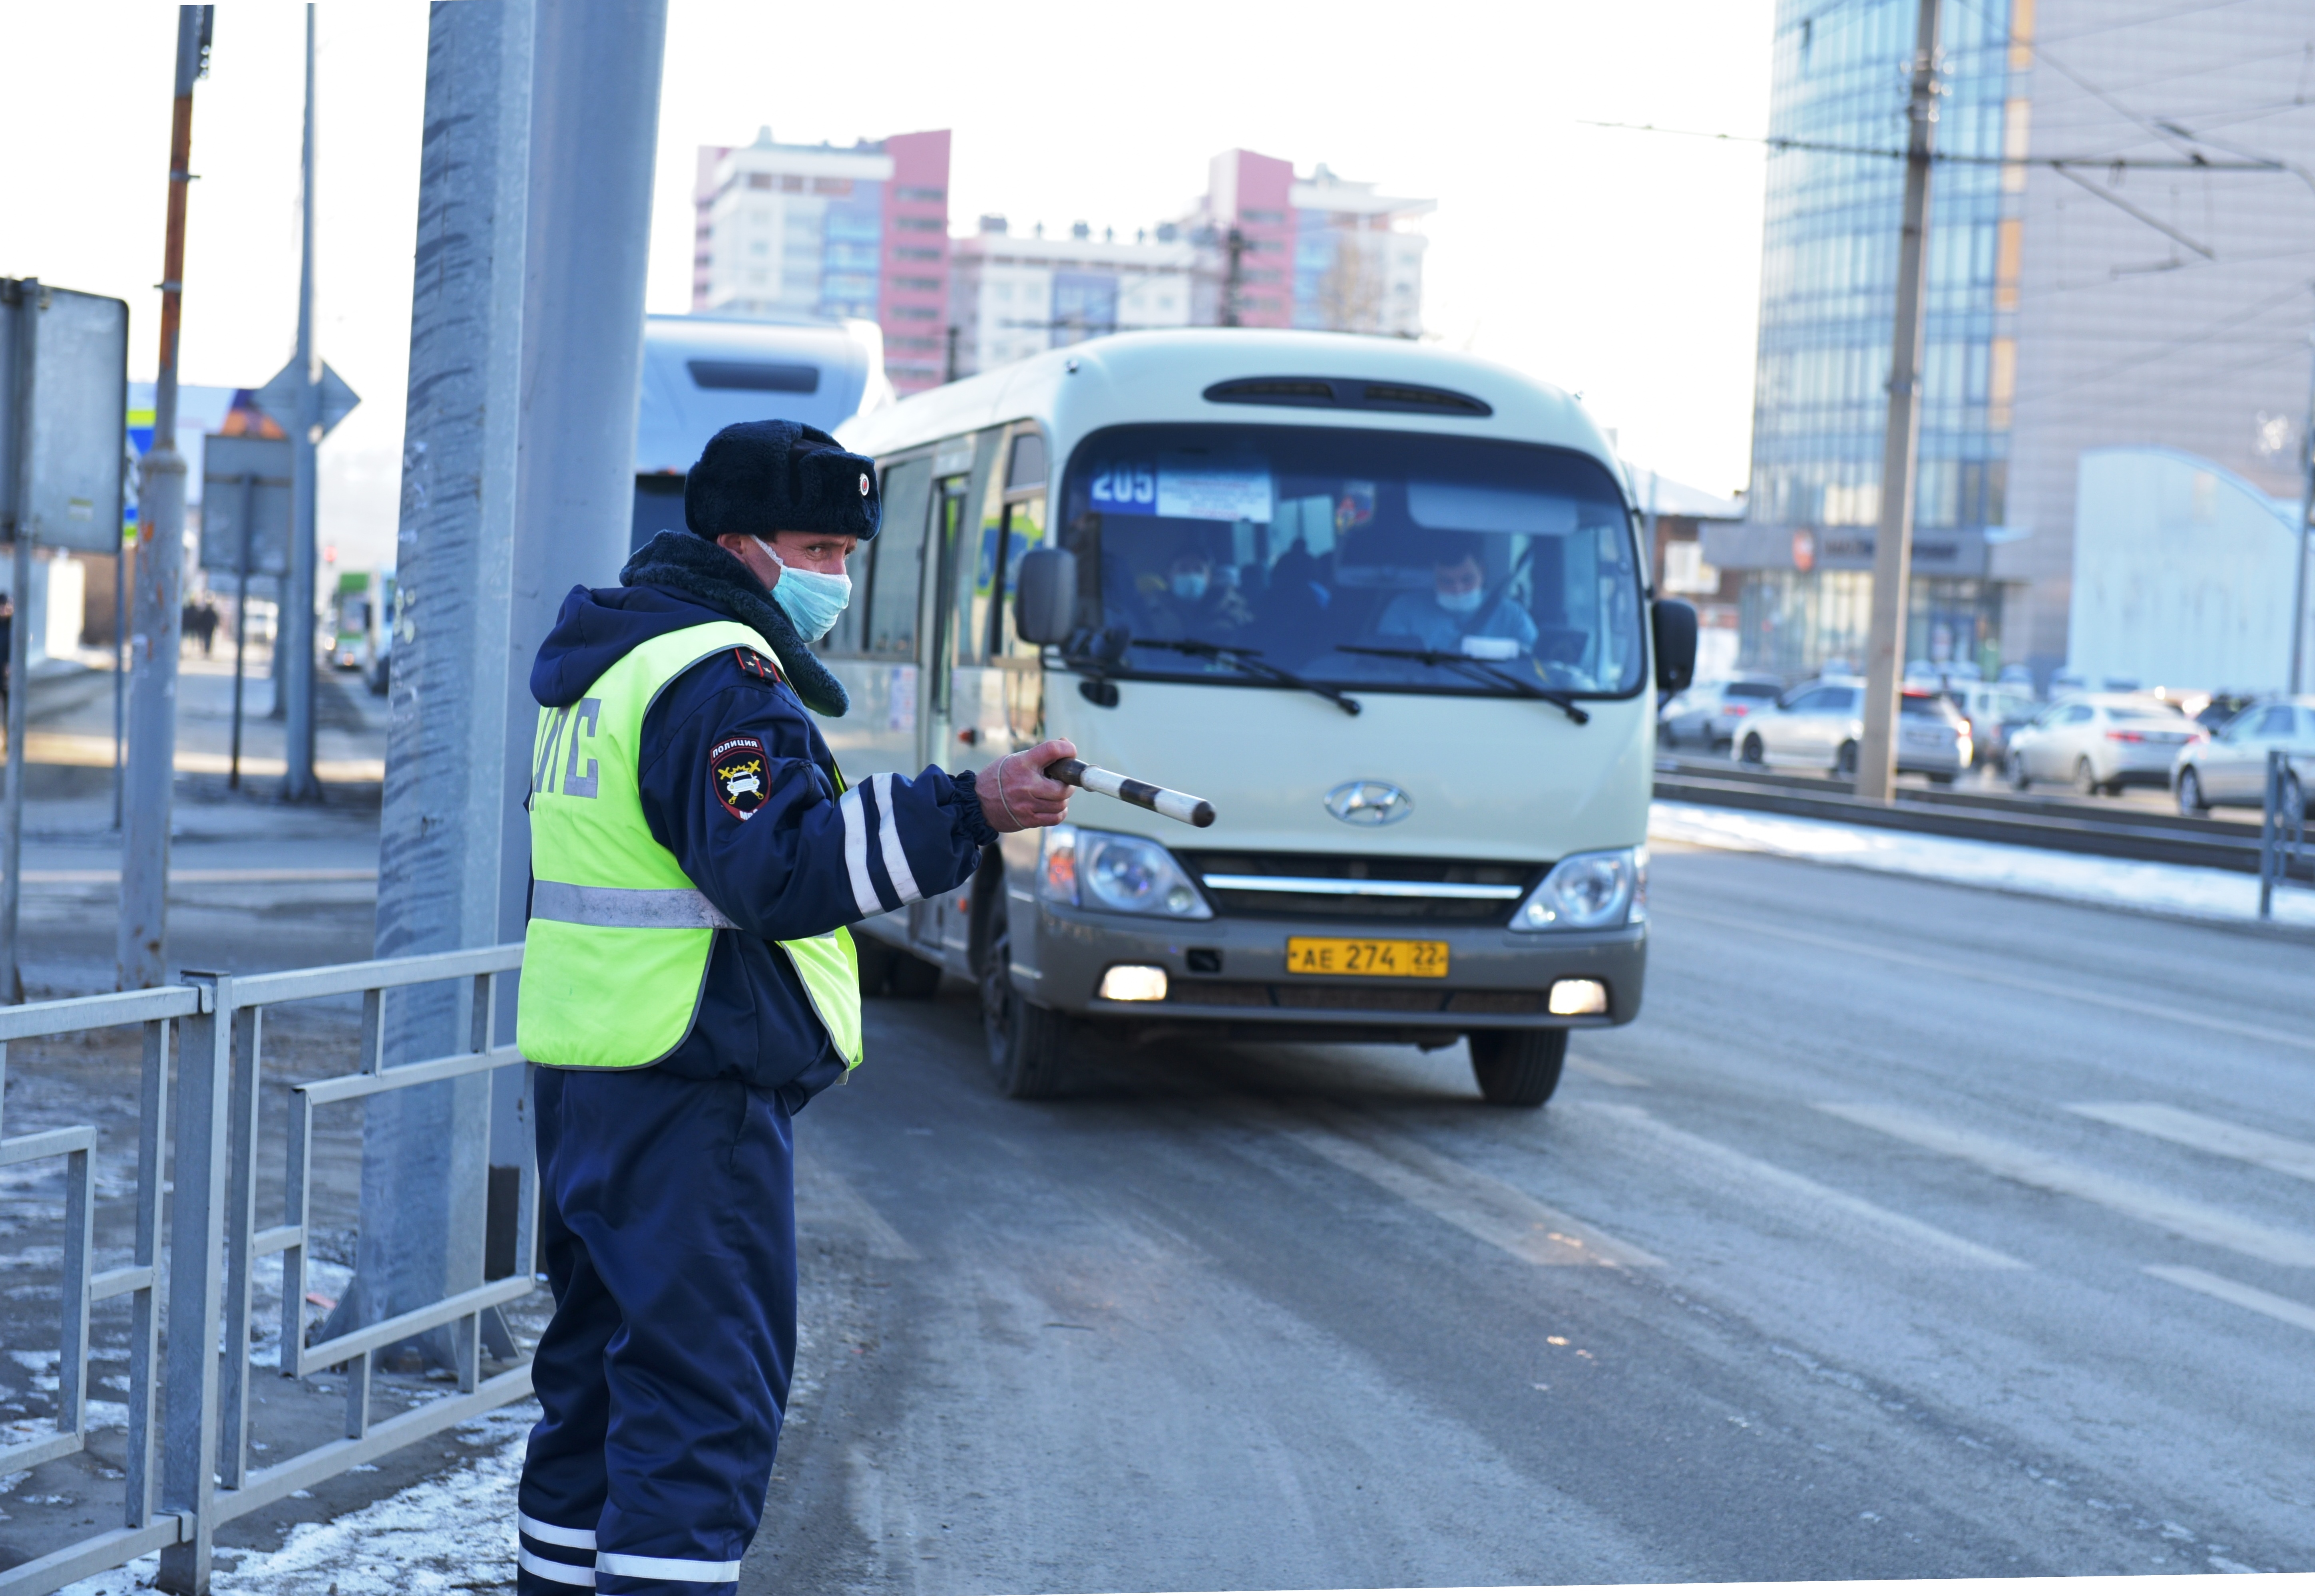 В Барнауле продолжаются проверки в общественном транспорте по соблюдению масочного режима